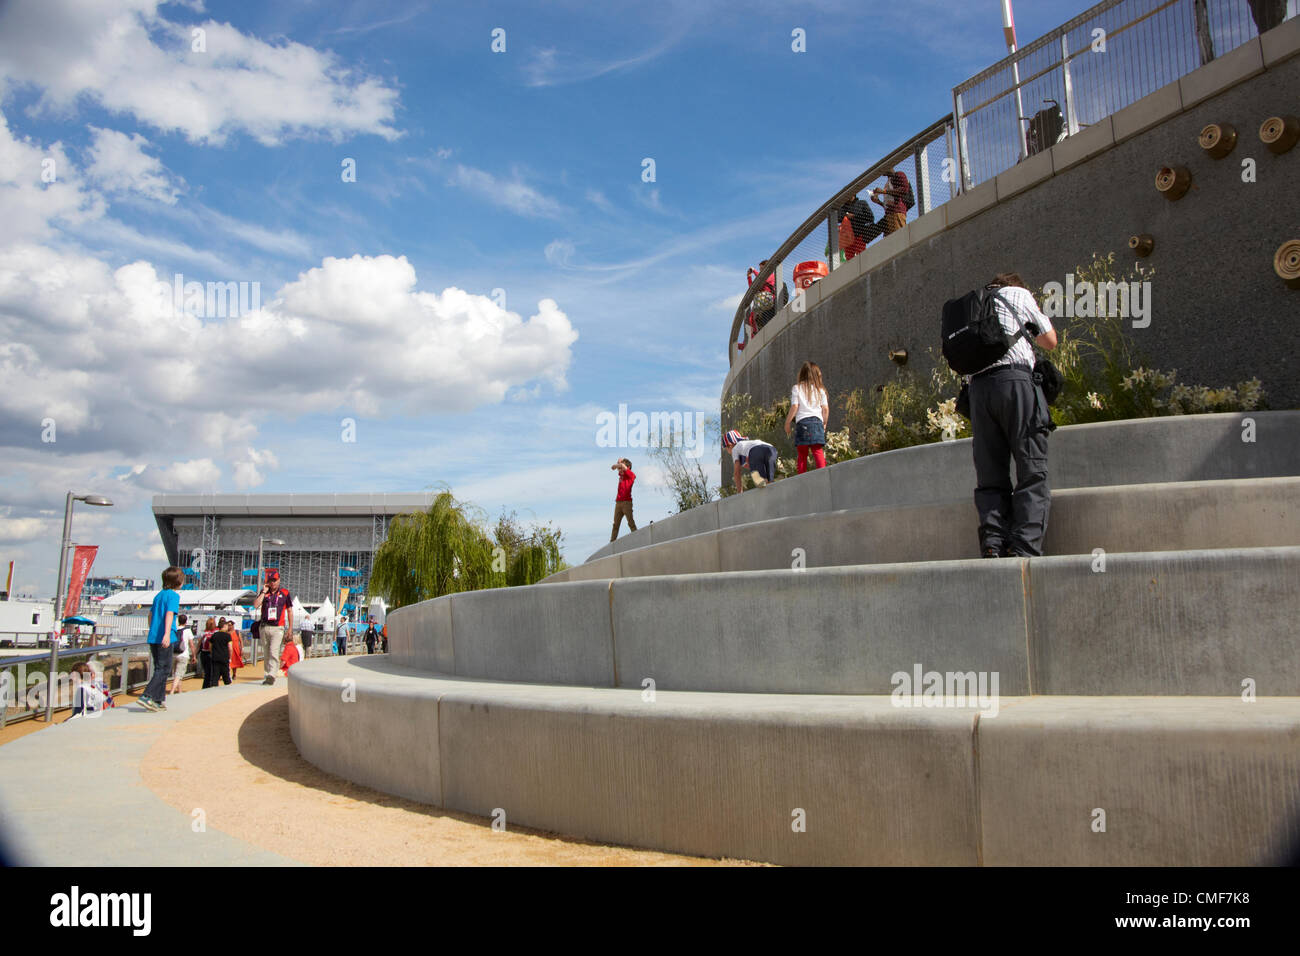 Funzione di passi al Parco Olimpico, Londra 2012 Giochi Olimpici sito, Stratford London E20, Regno Unito Foto Stock